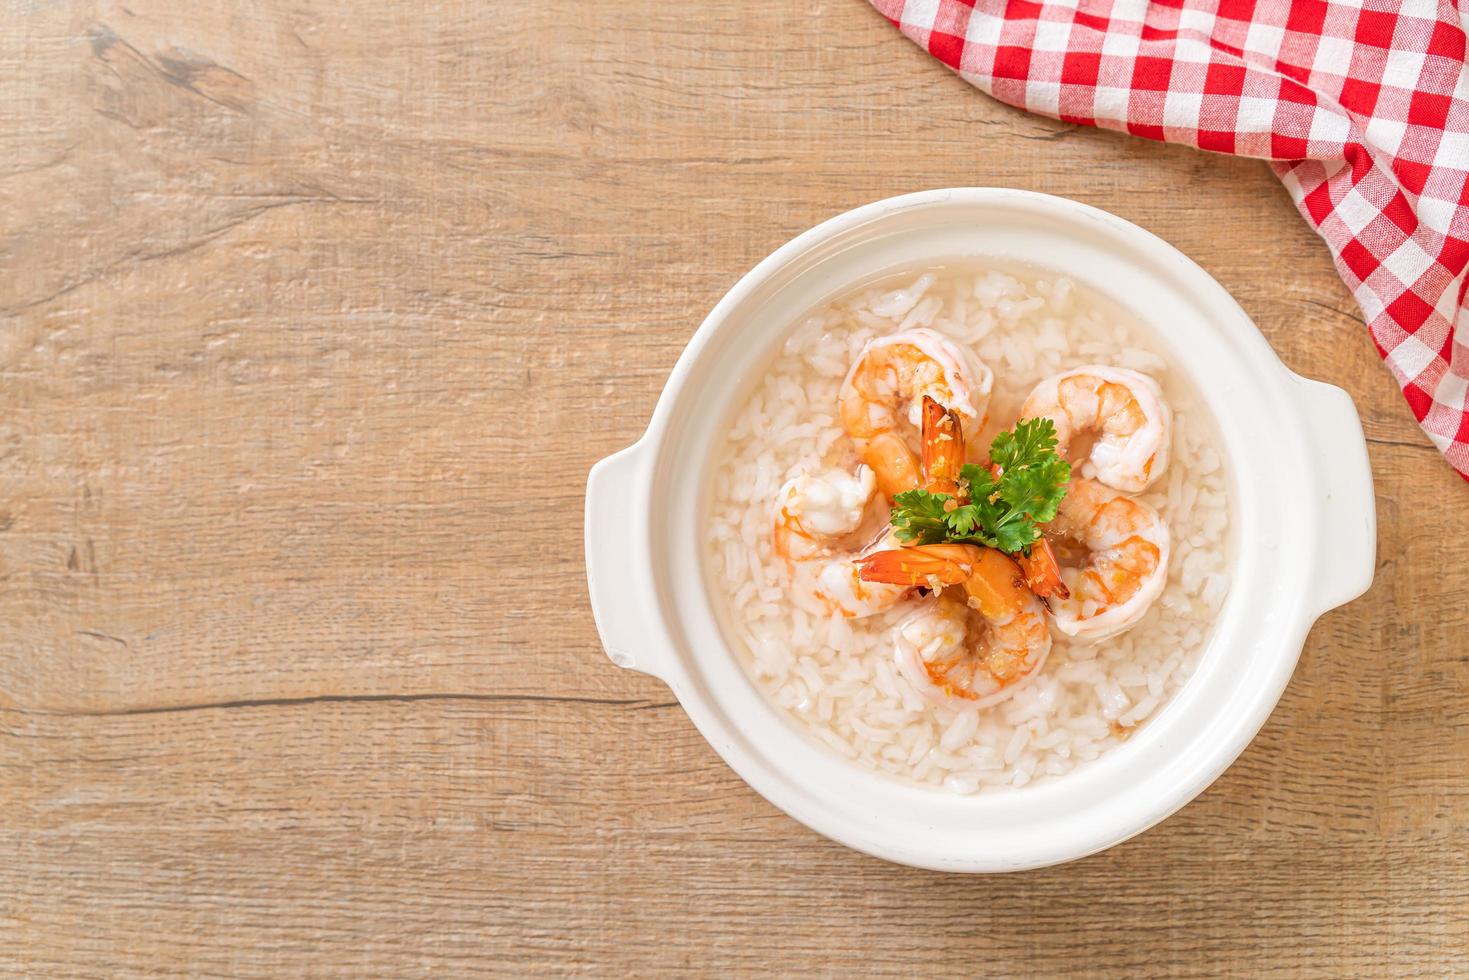 Porridge oder gekochte Reissuppe mit Shrimp Bowl foto